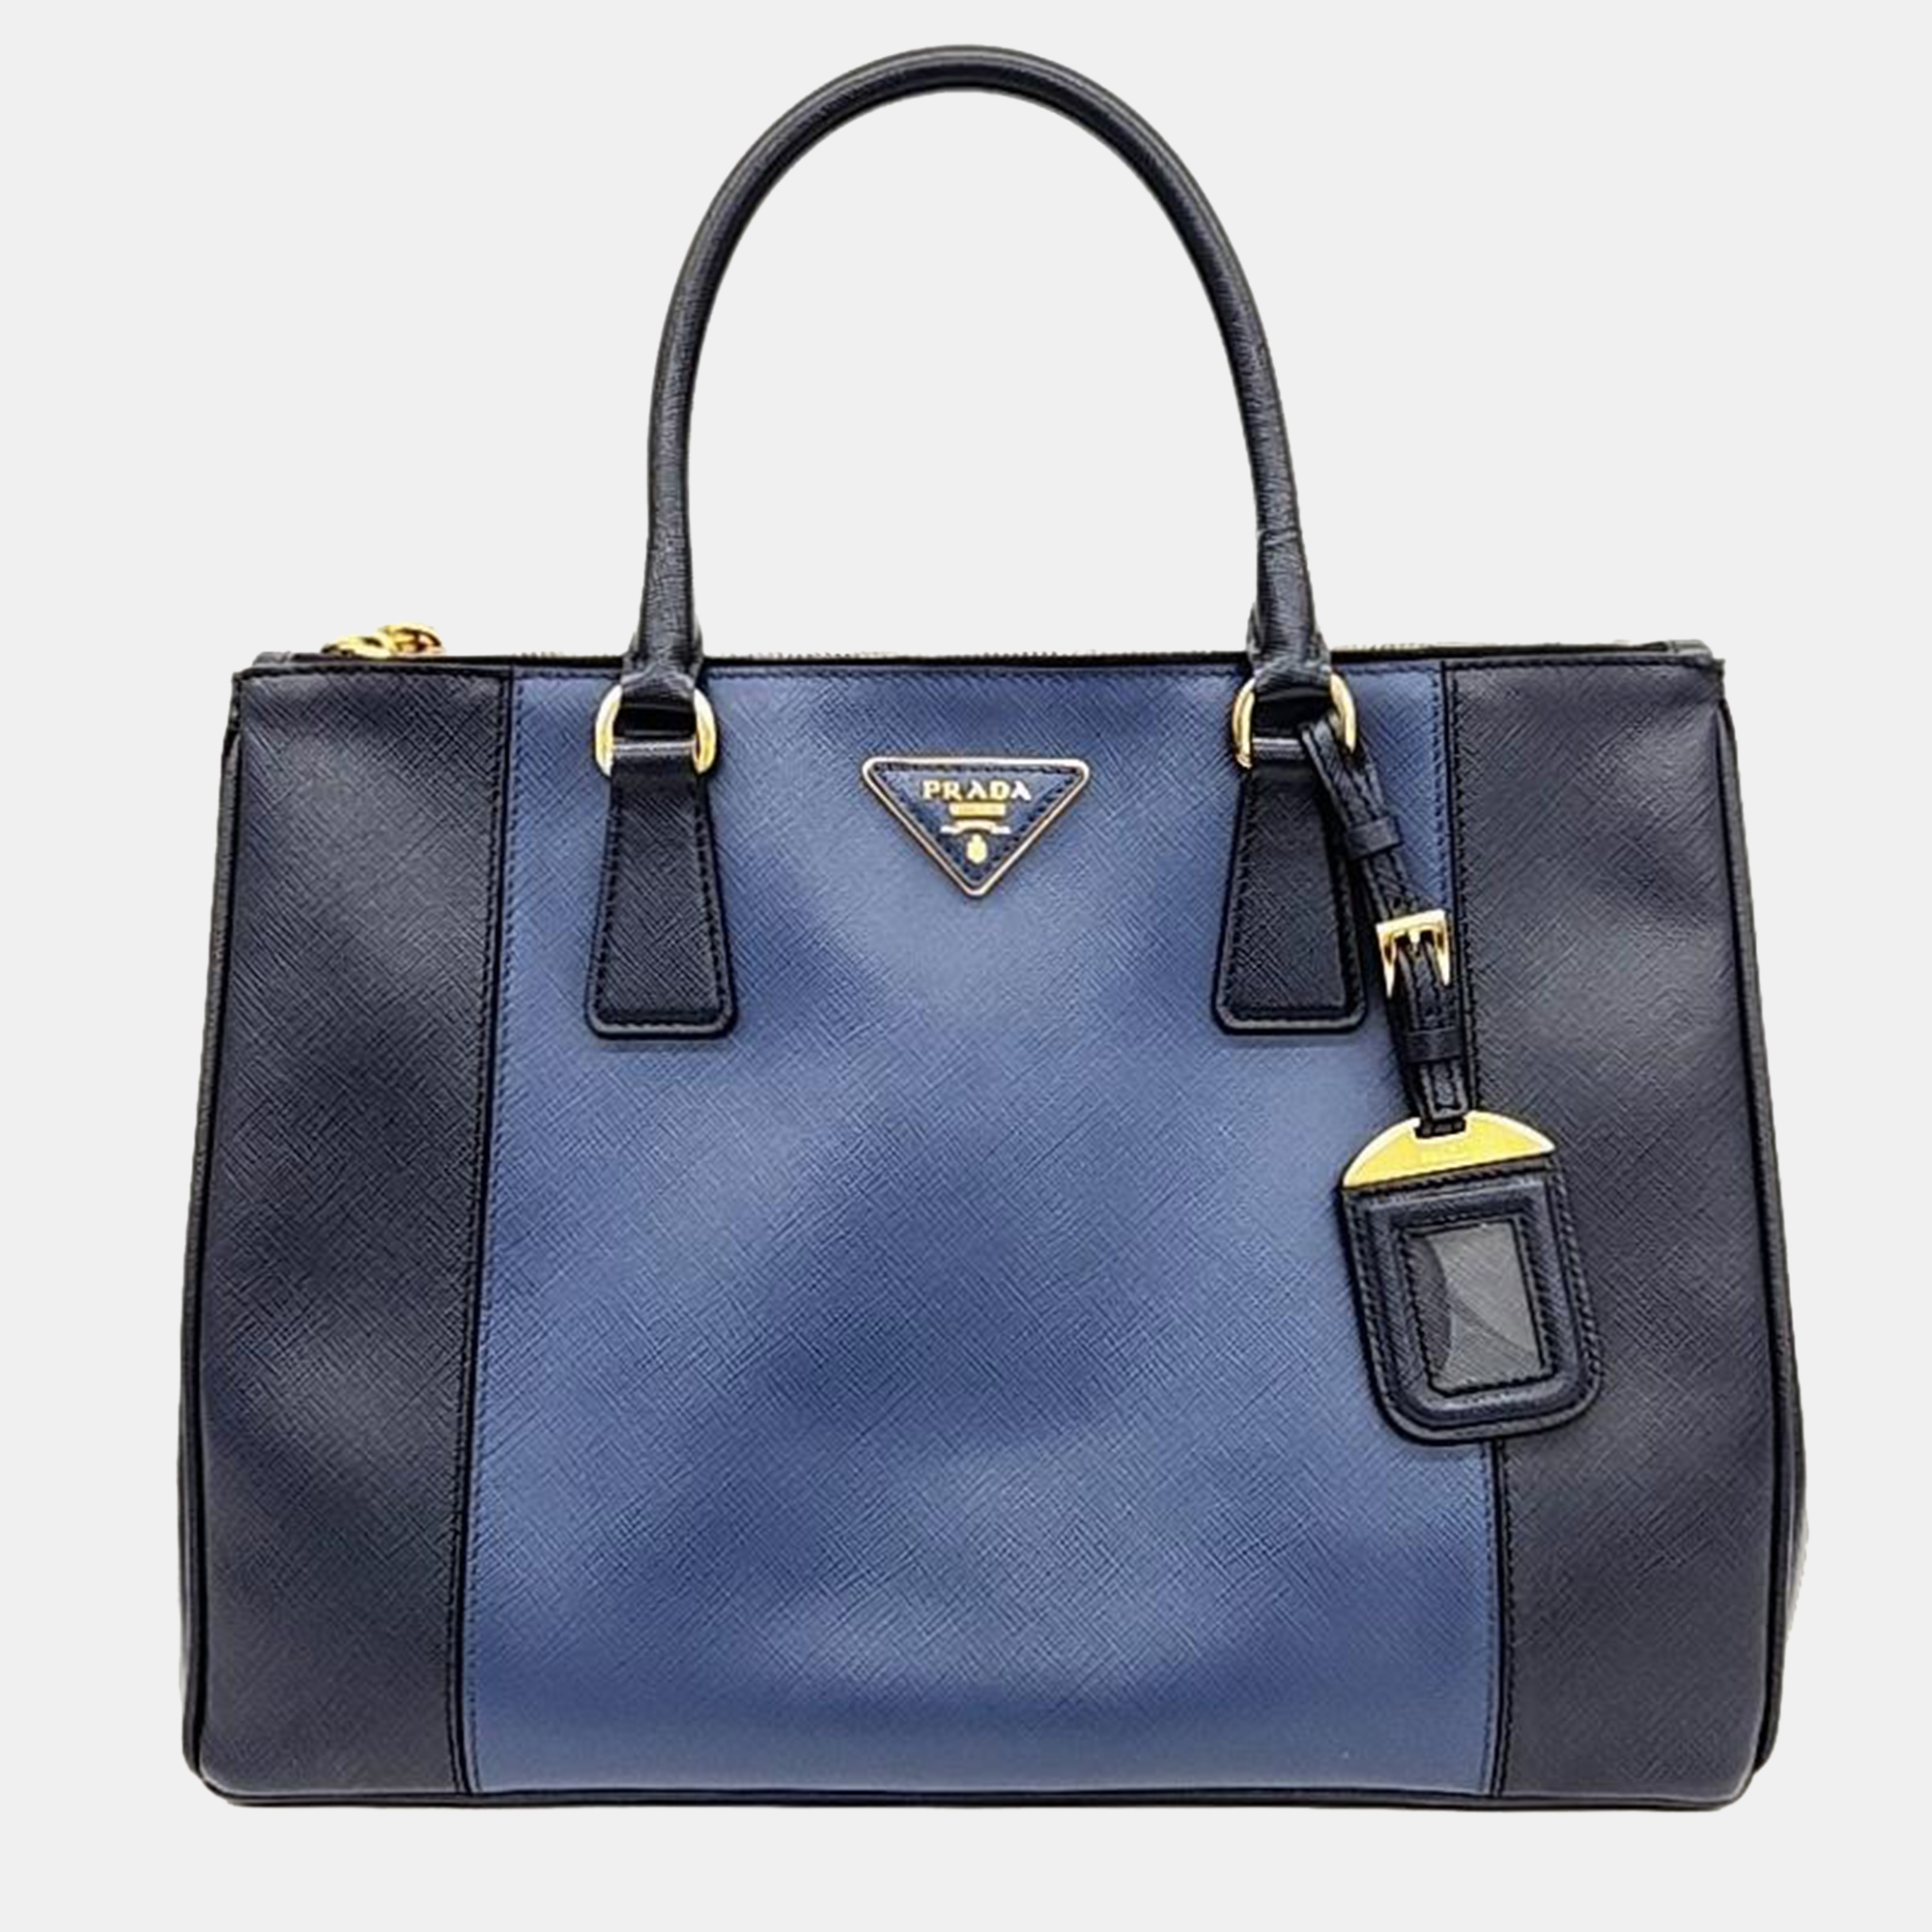 Prada navy blue saffiano leather tote bag